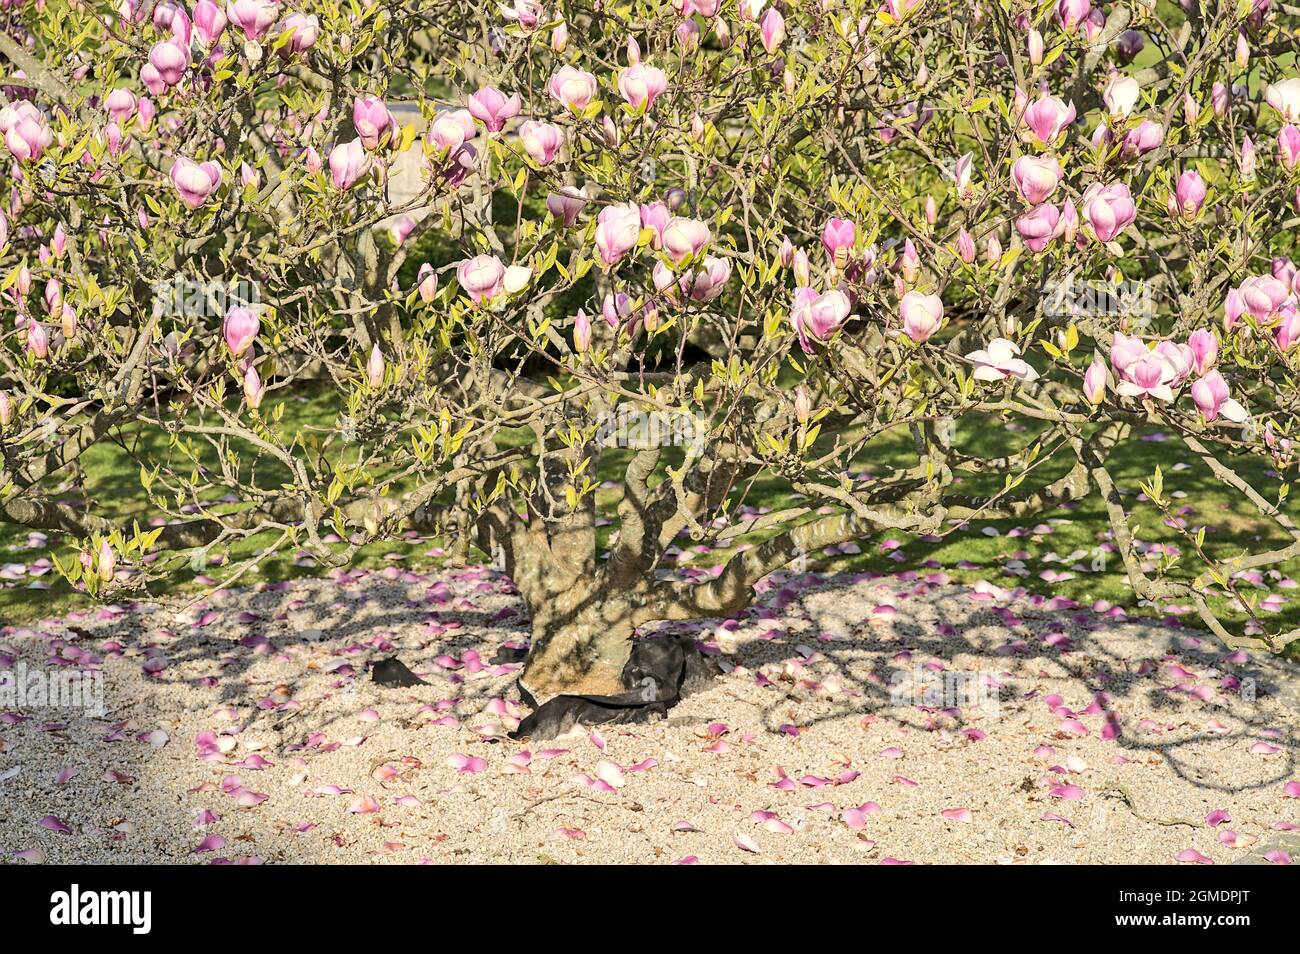 Belle vue rapprochée des racines et des pétales tombés d'un arbre rose de la soucoupe magnolia chinoise (Magnolia Soulangeana), avec paillage rond en pierre grise Banque D'Images